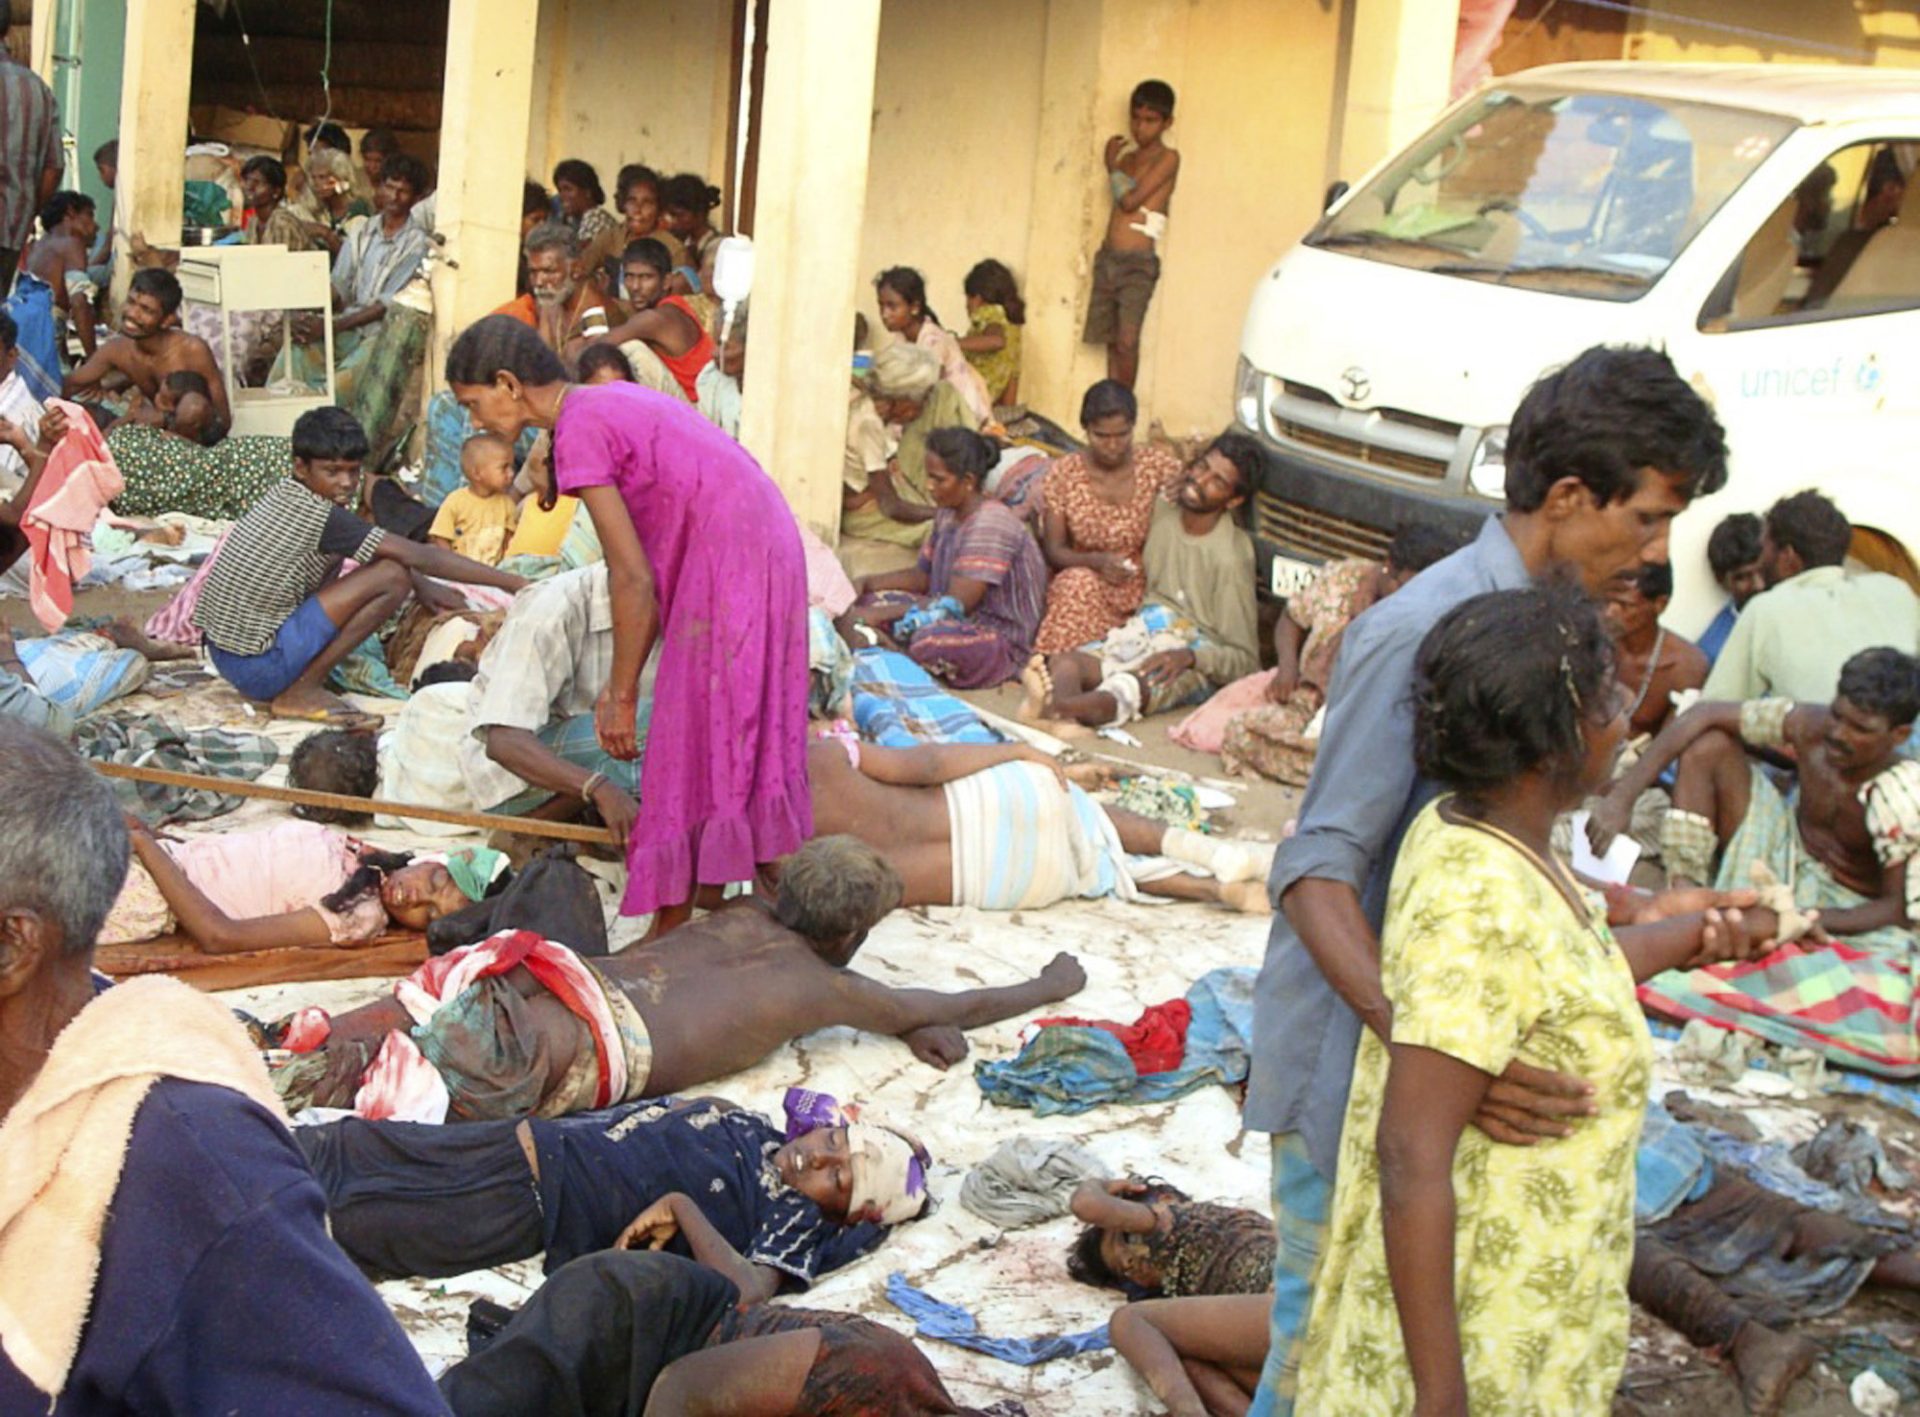 Les champs de la mort au Sri Lanka laissent une ombre persistante